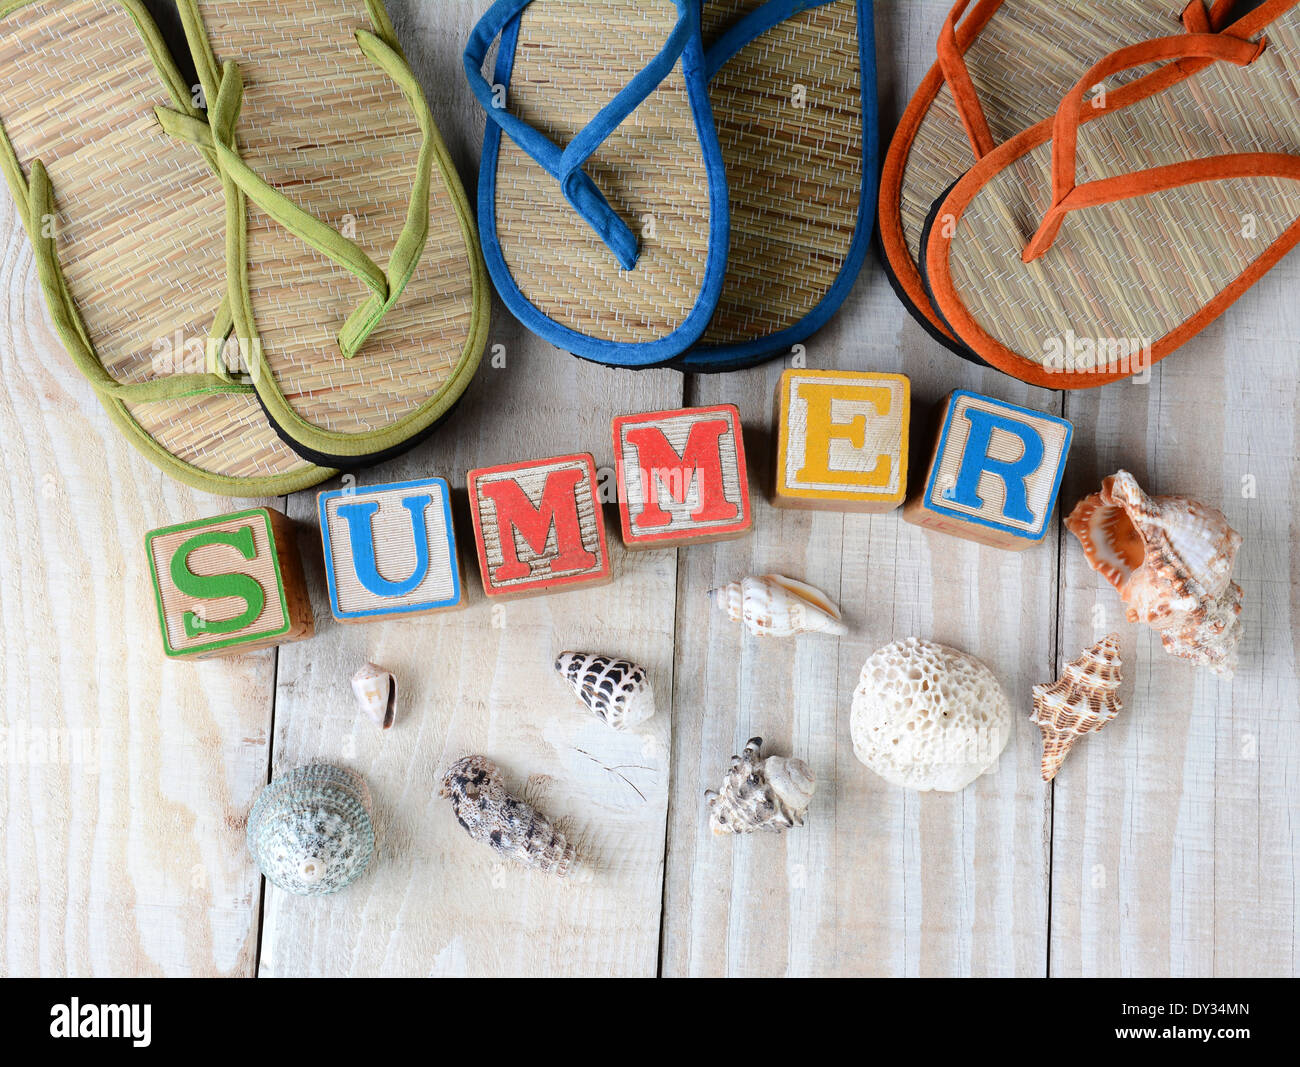 Blocs pour enfants à l'été sur les planches de bois rustique, le mot est entouré par des coquillages, et des sandales style flip-flop. Banque D'Images